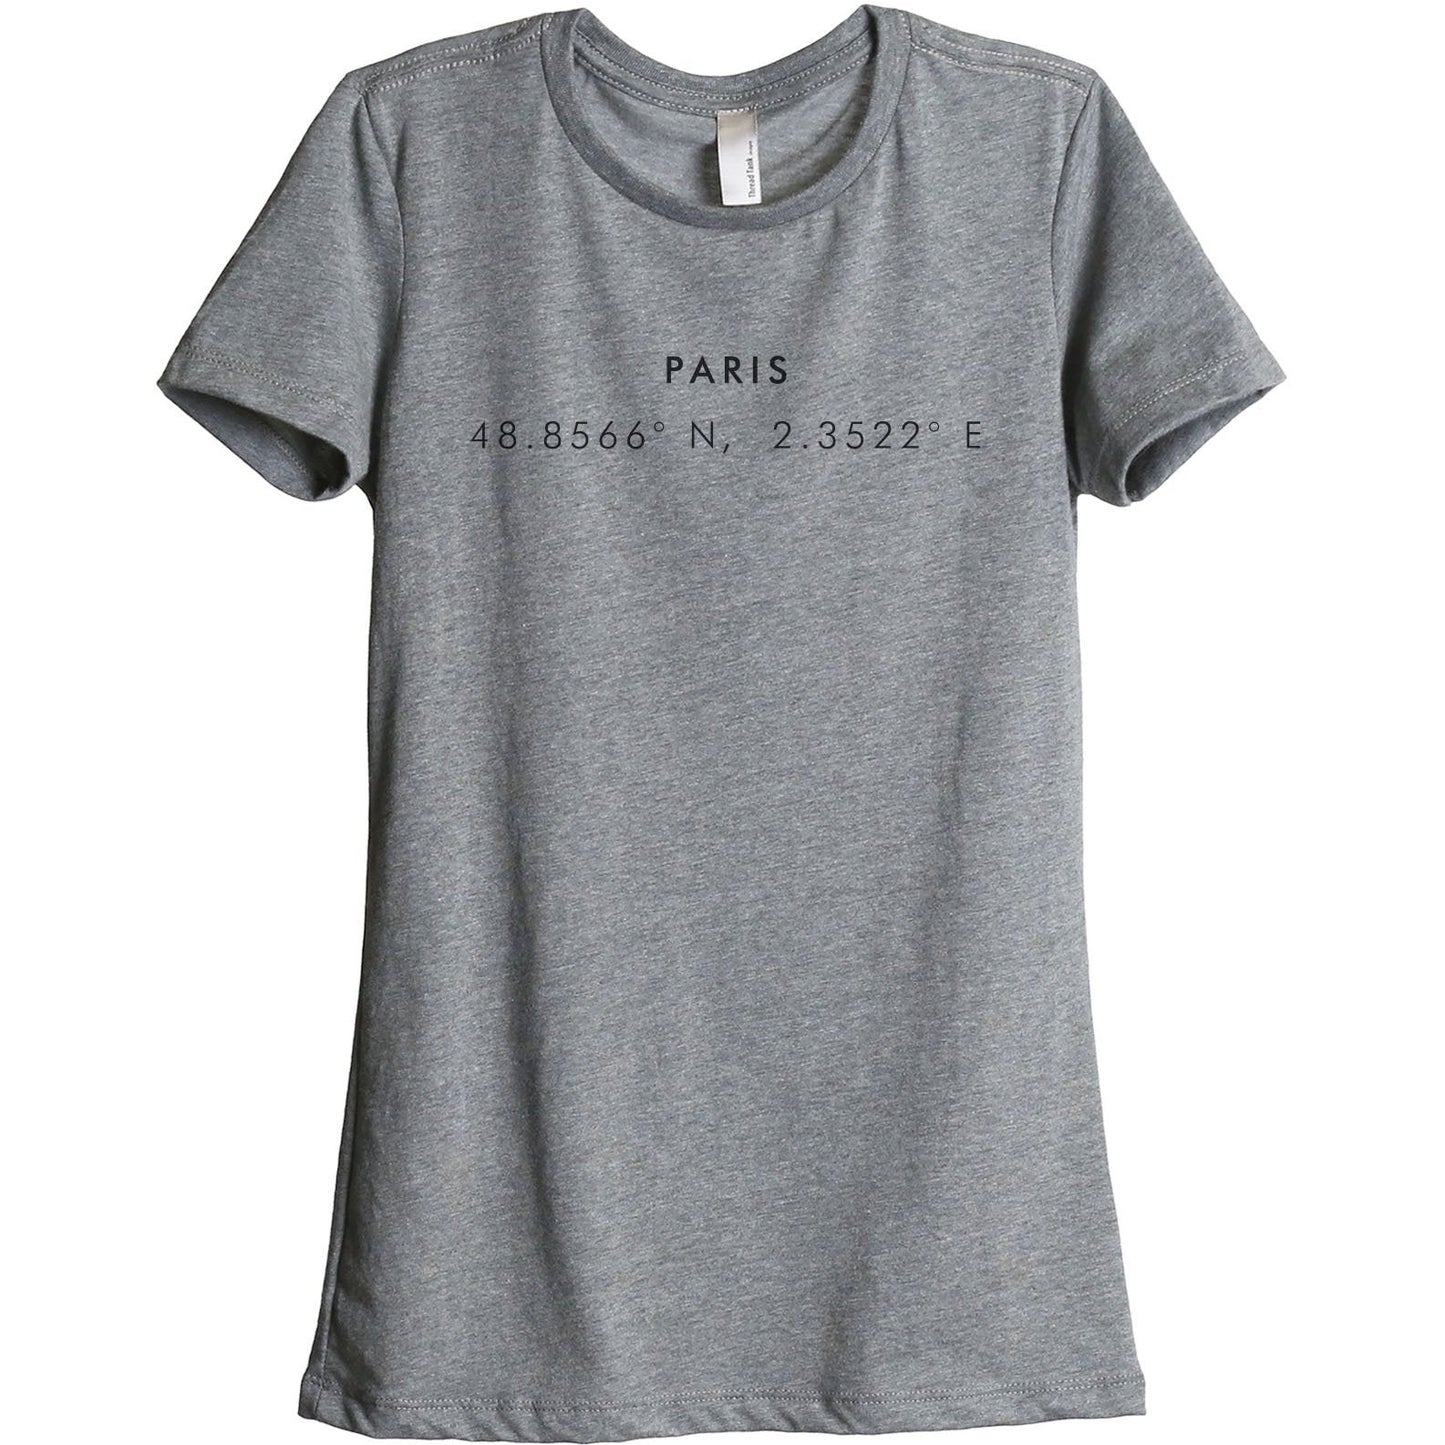 Paris Coordinates Women's Relaxed Crewneck T-Shirt Top Tee Heather Grey